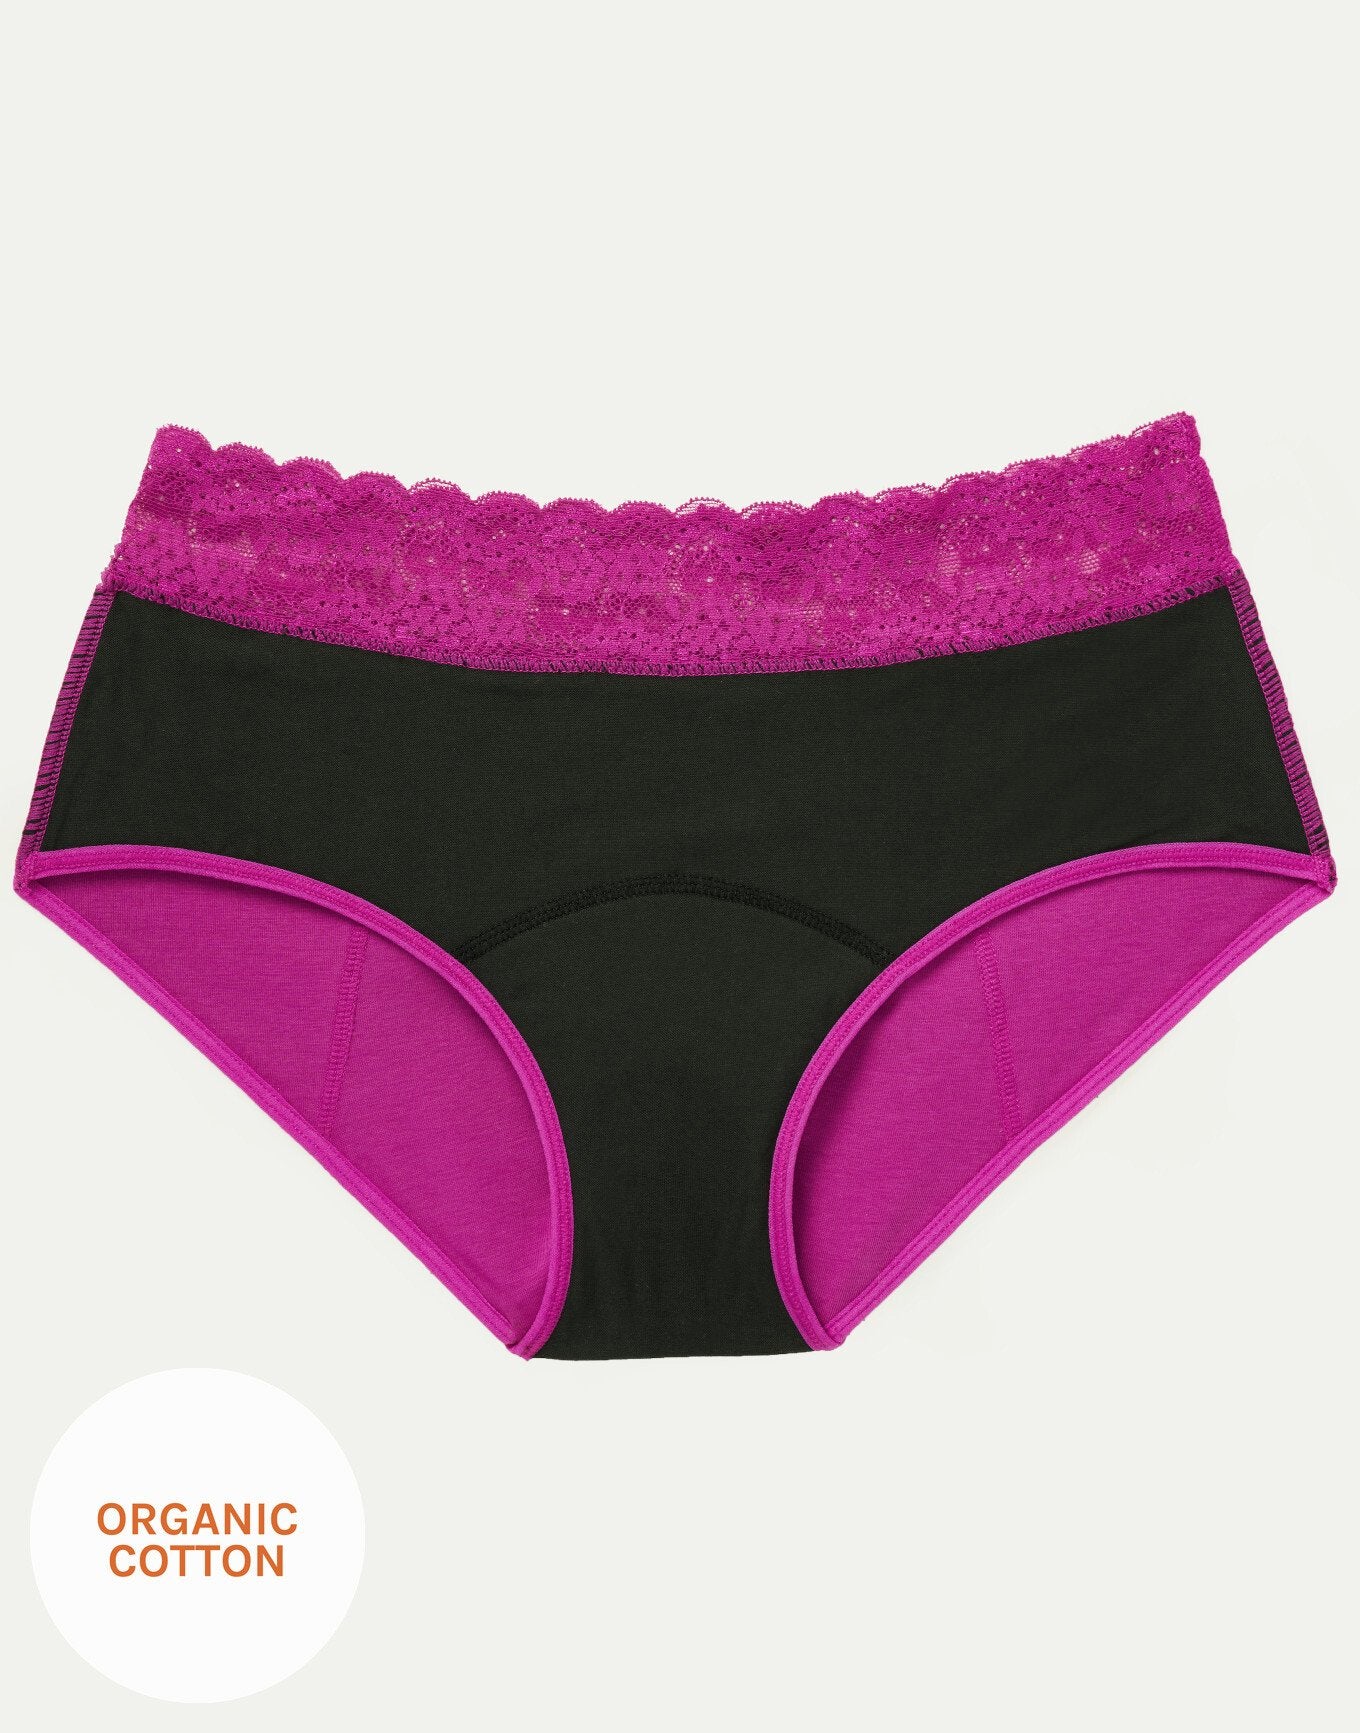 Joyja Ella period-proof panty in color Festival Fuchsia and shape midi brief